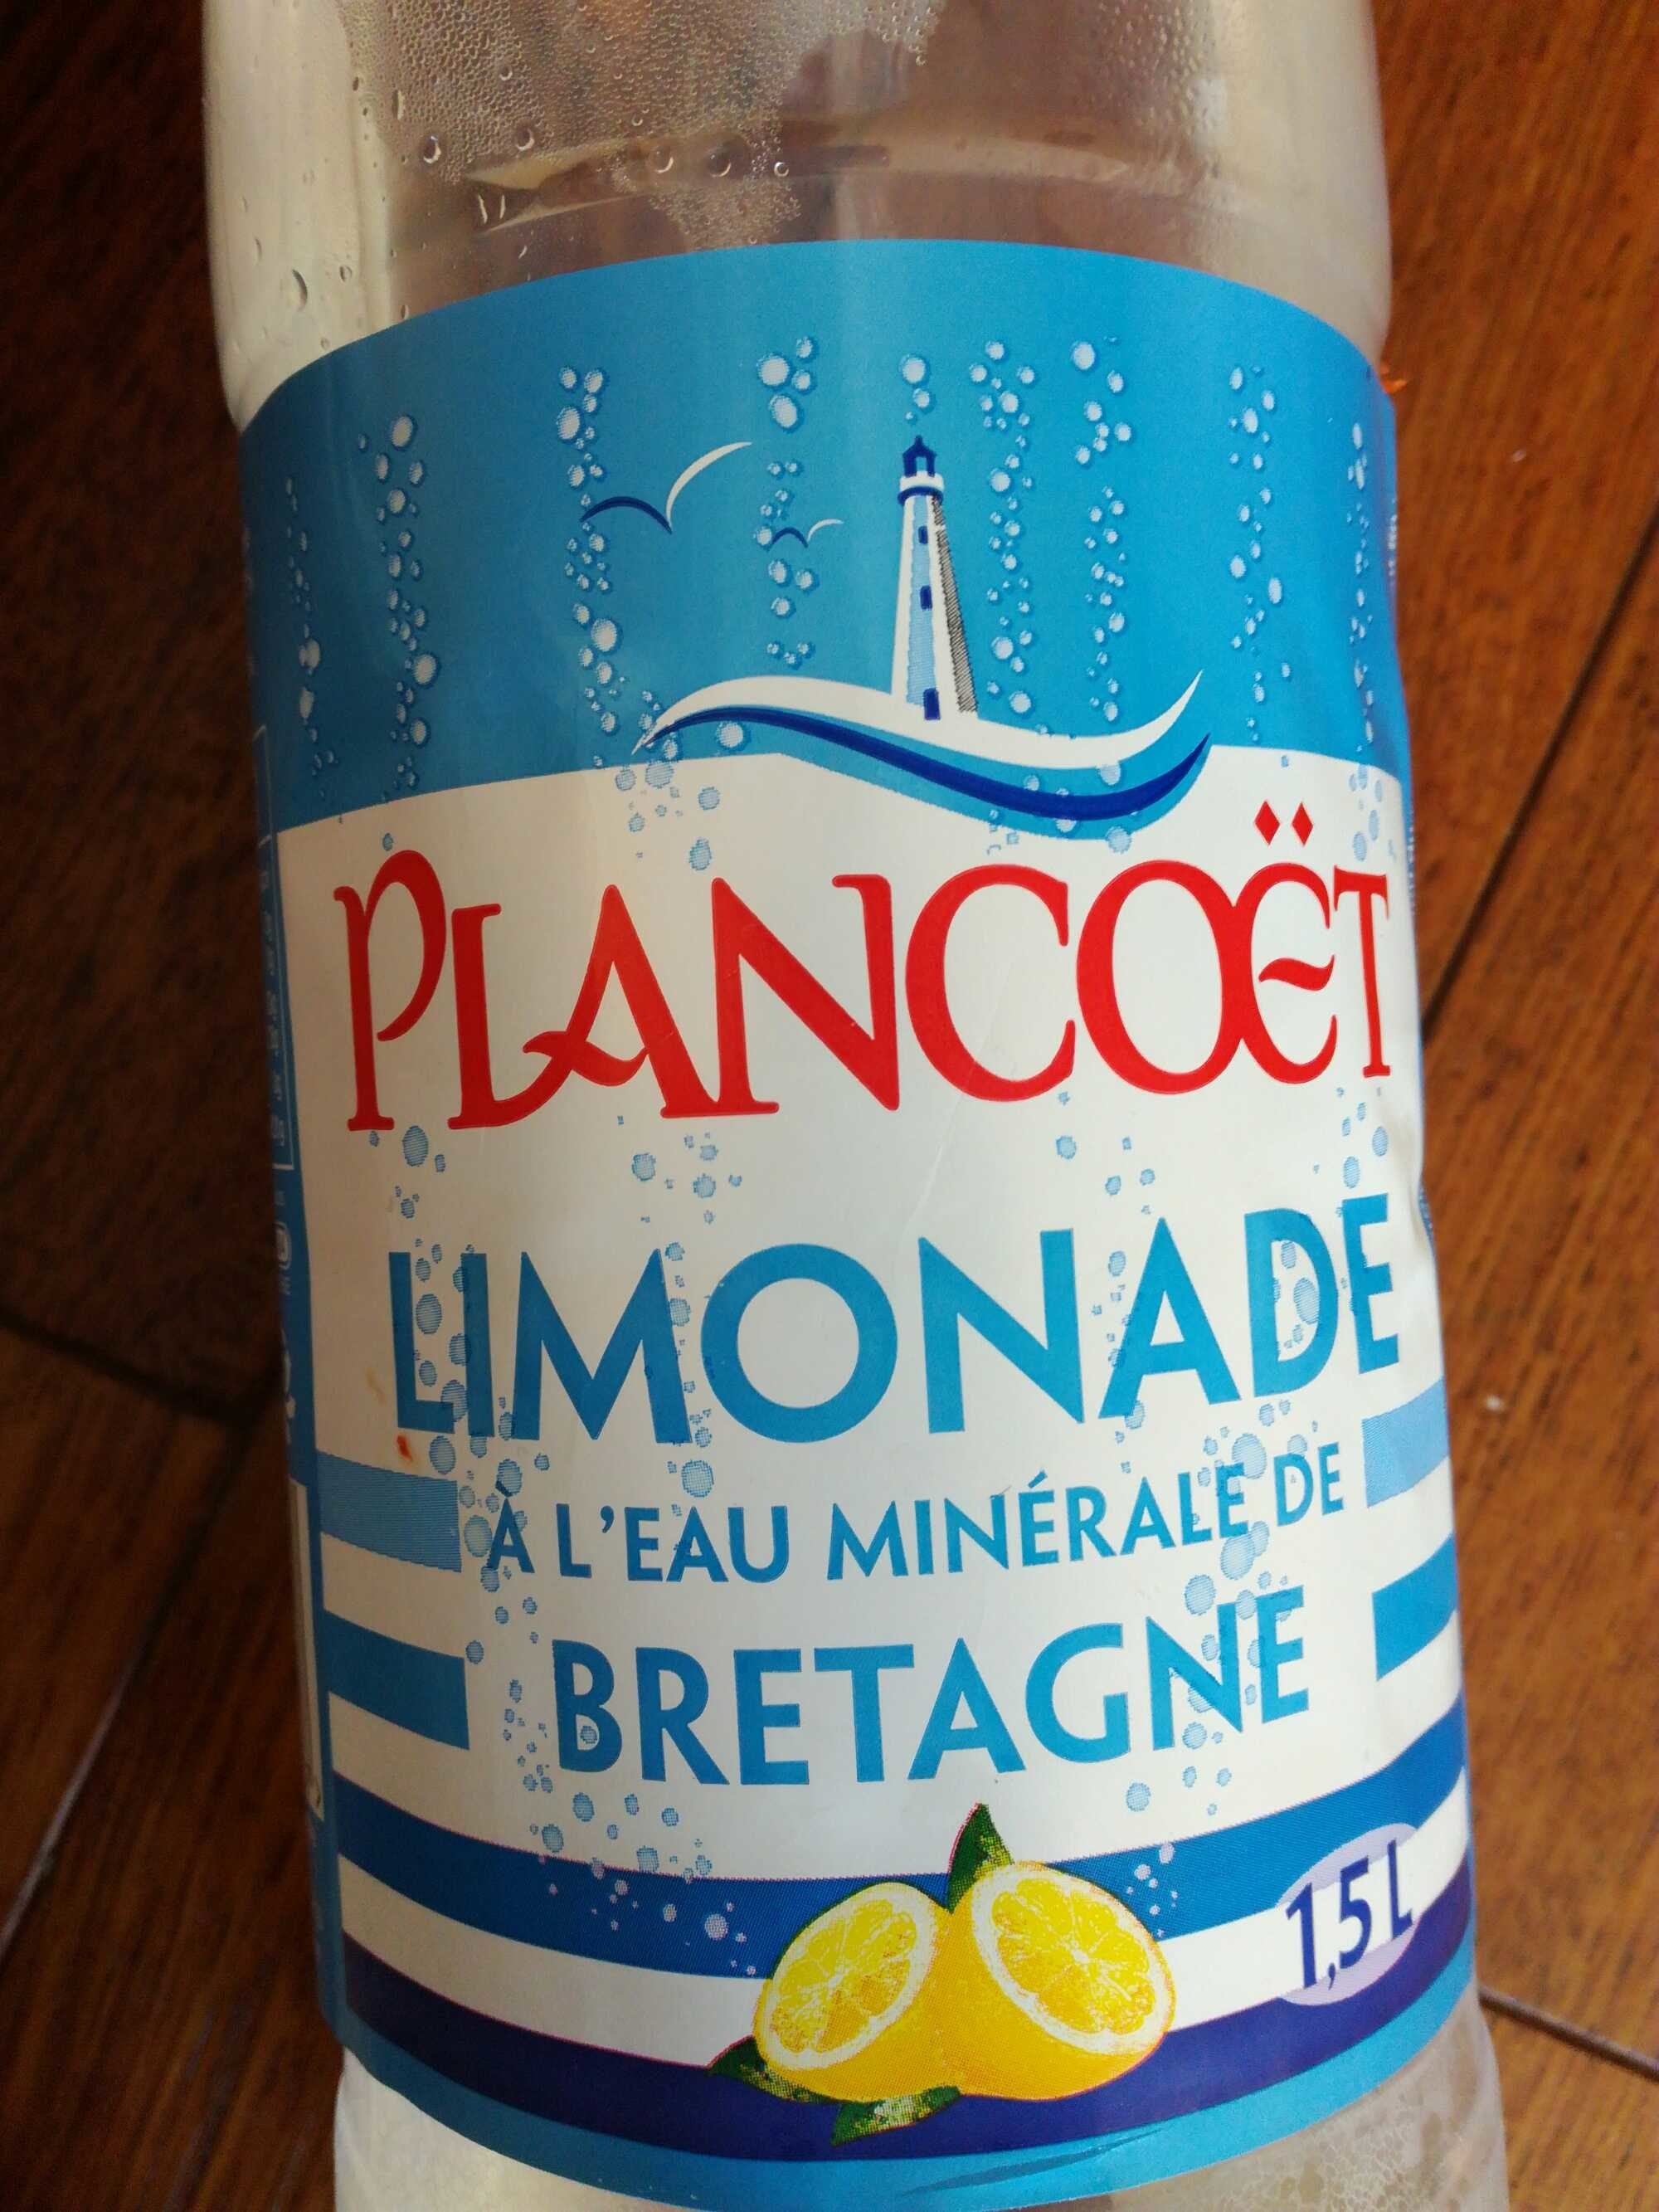 Limonade PLANCOET, bouteille de 1,5 litre - Product - fr